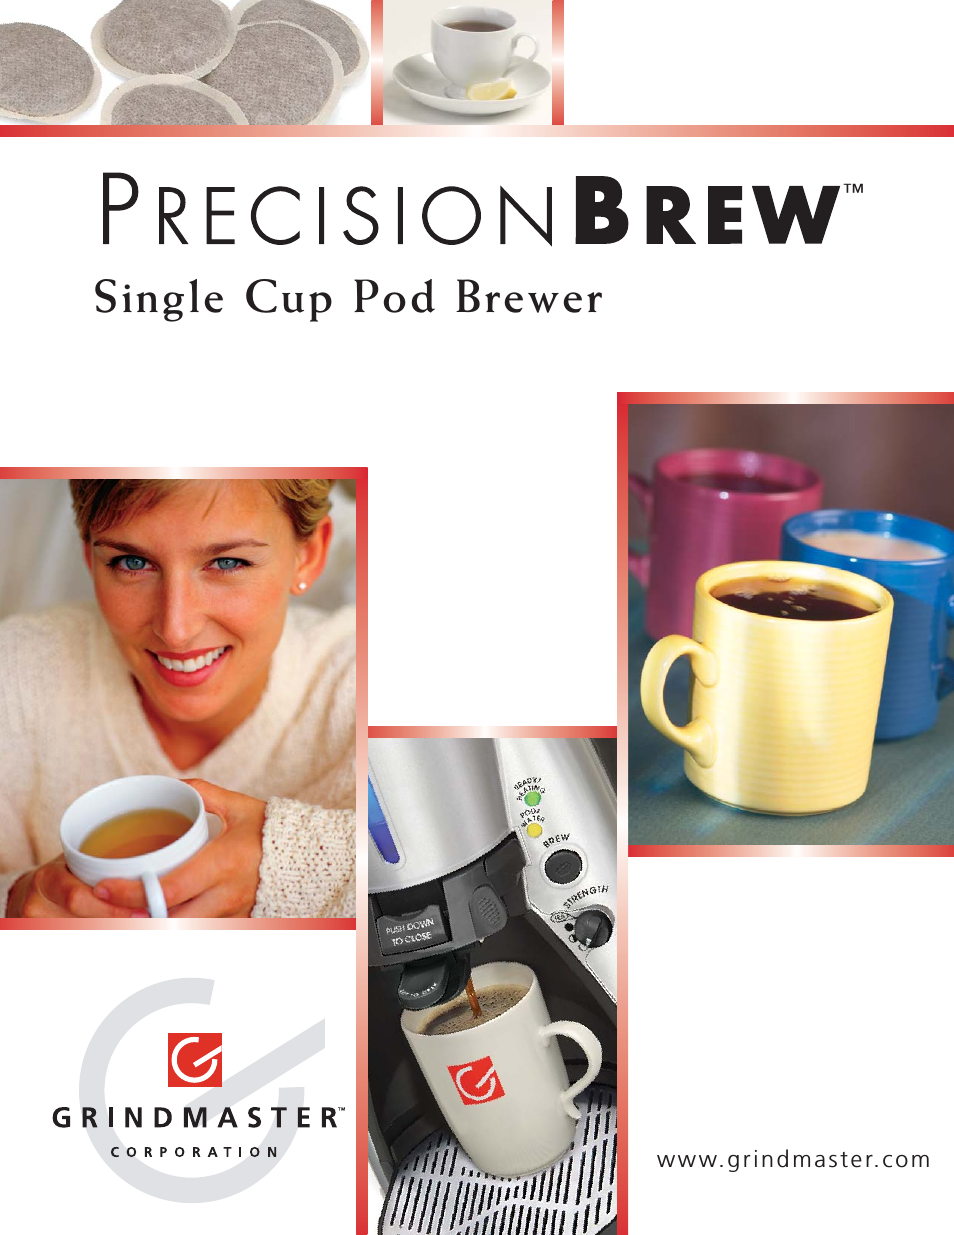 PRECISION BREW Single Cup Pod Brewer